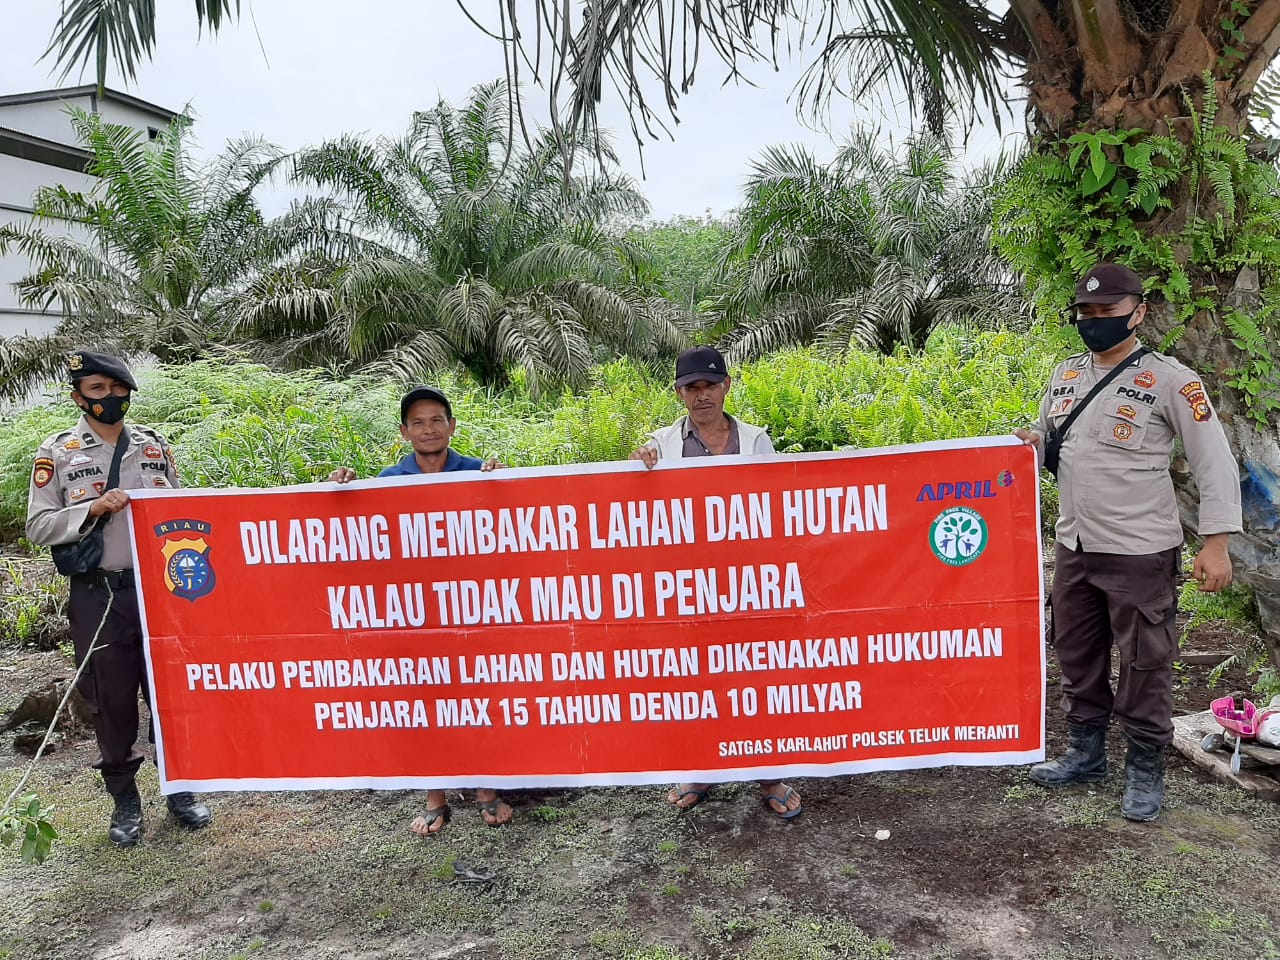 Tak Ingin Terjadi Kebakaran, Polsek Teluk Meranti Sebarkan Maklumat Kapolda Riau